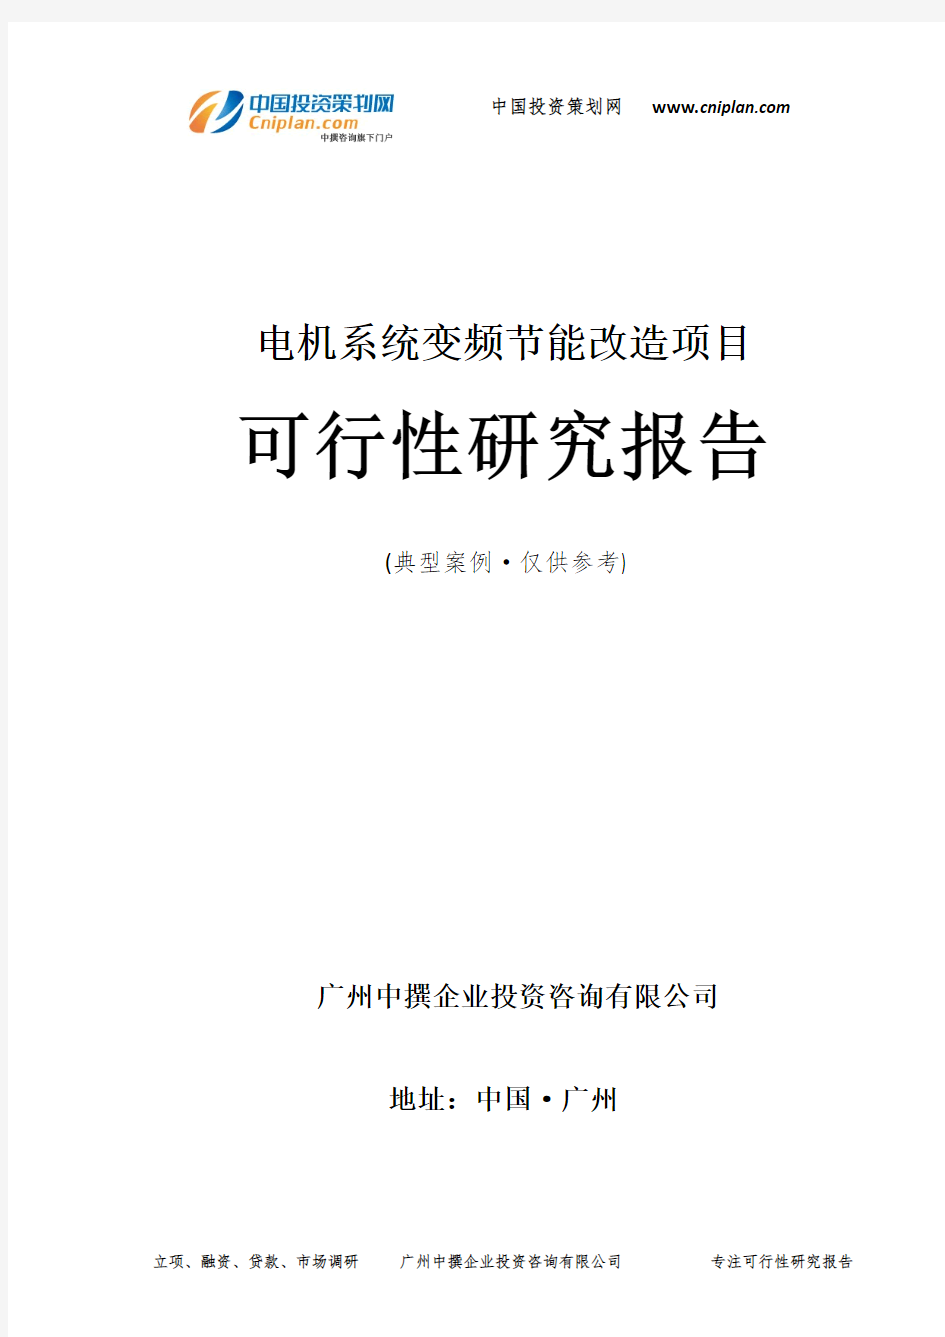 电机系统变频节能改造项目可行性研究报告-广州中撰咨询